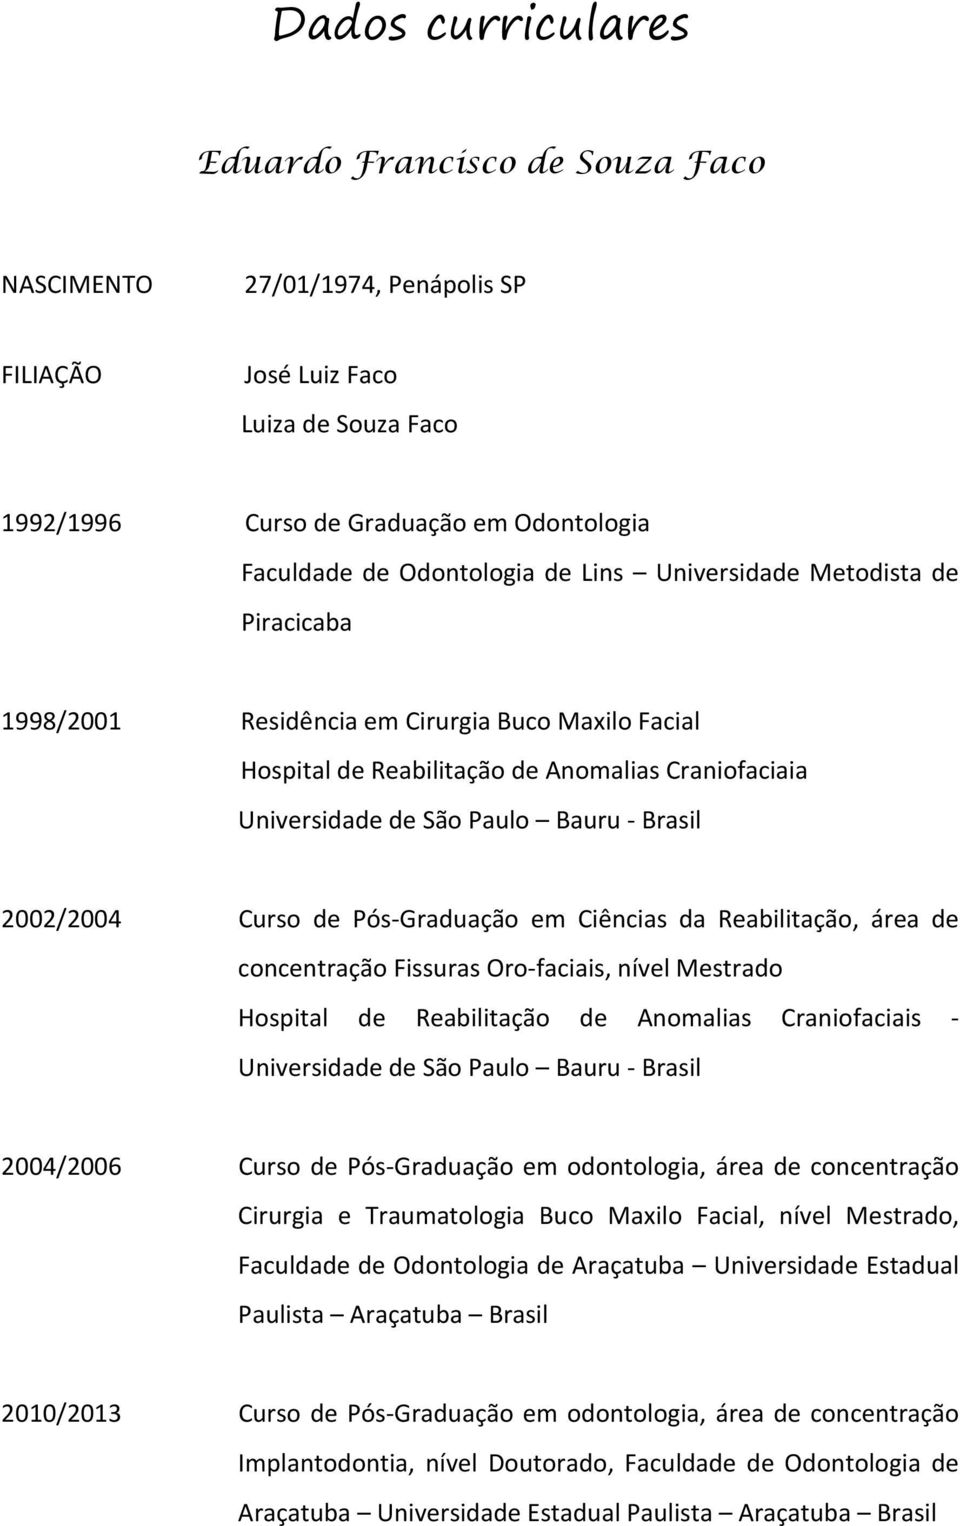 Curso de Pós-Graduação em Ciências da Reabilitação, área de concentração Fissuras Oro-faciais, nível Mestrado Hospital de Reabilitação de Anomalias Craniofaciais - Universidade de São Paulo Bauru -